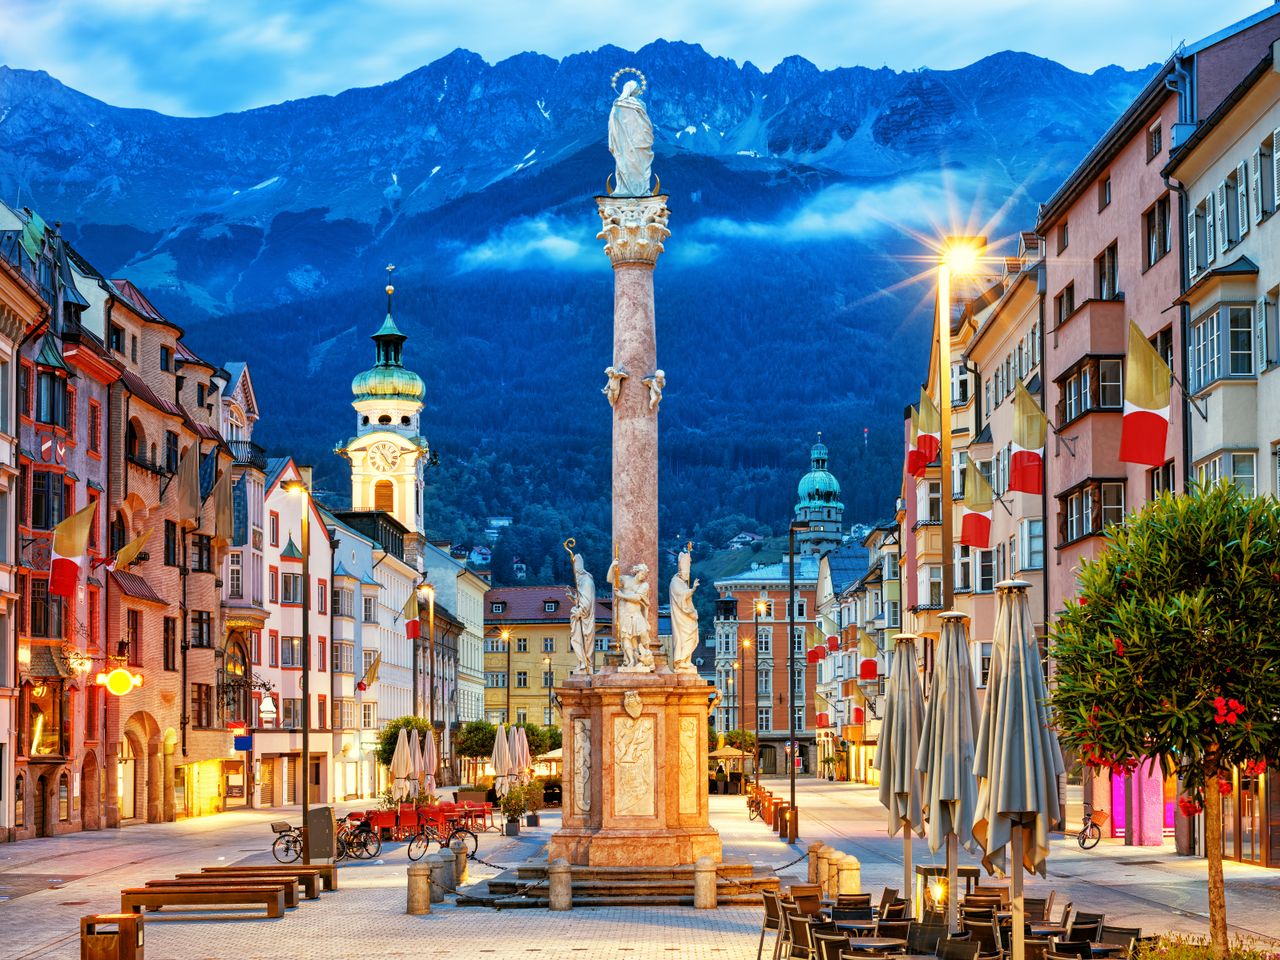 5 Tage in der Kaiserstadt Innsbruck